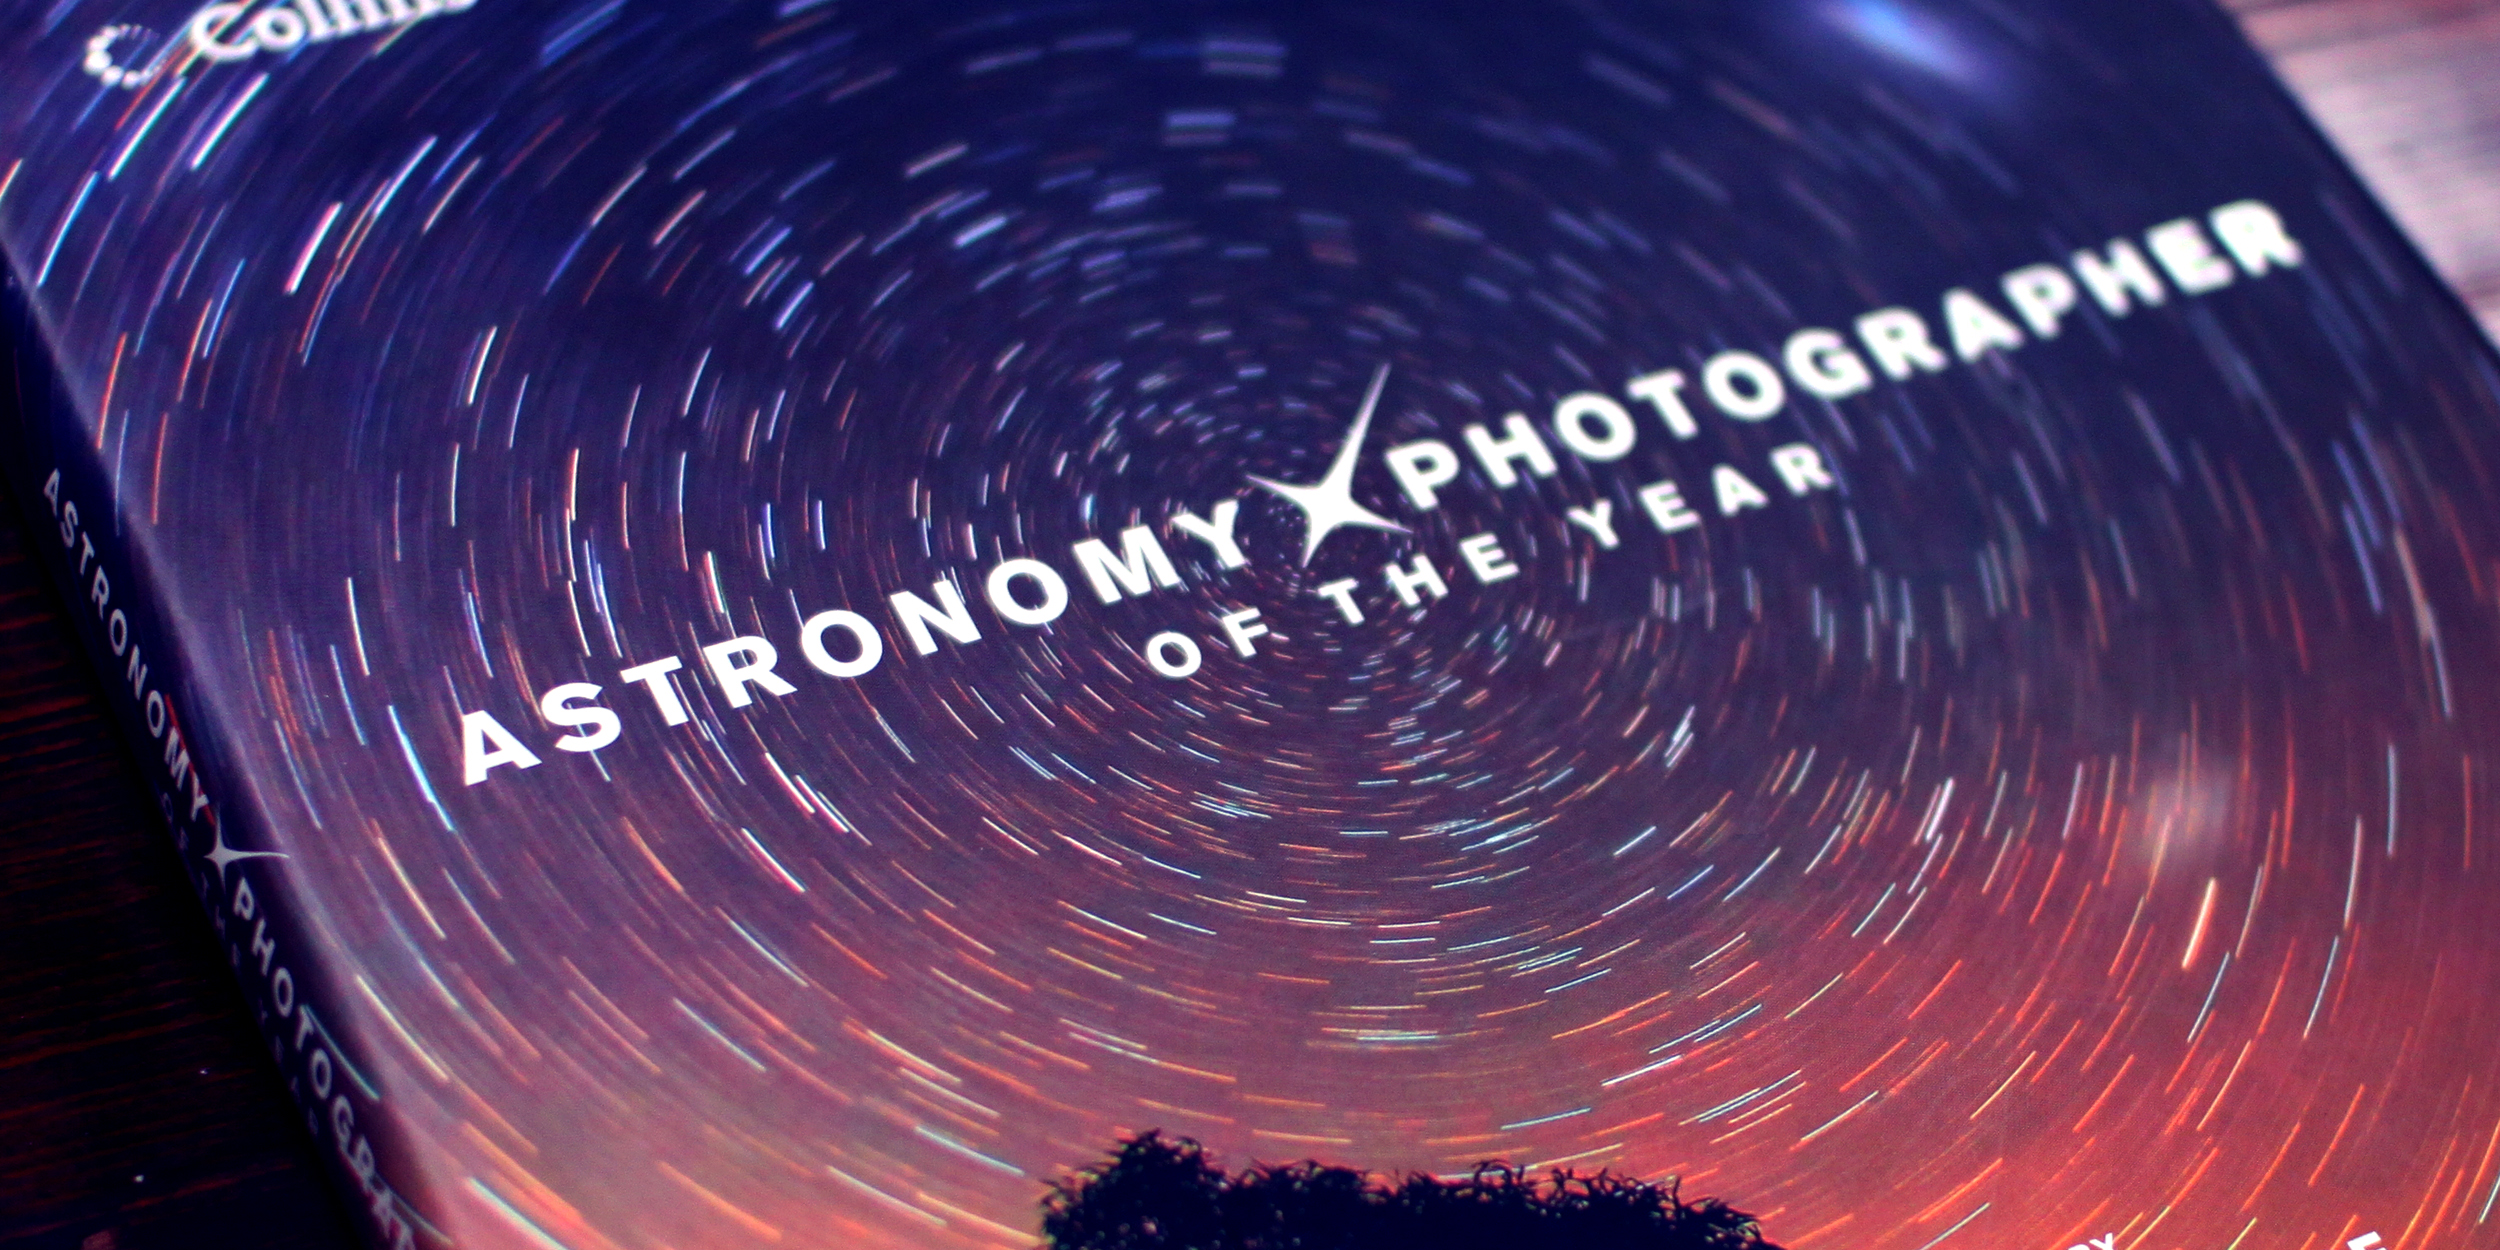 Гринвичская королевская обсерватория выбрала лучшие астрофотографии года